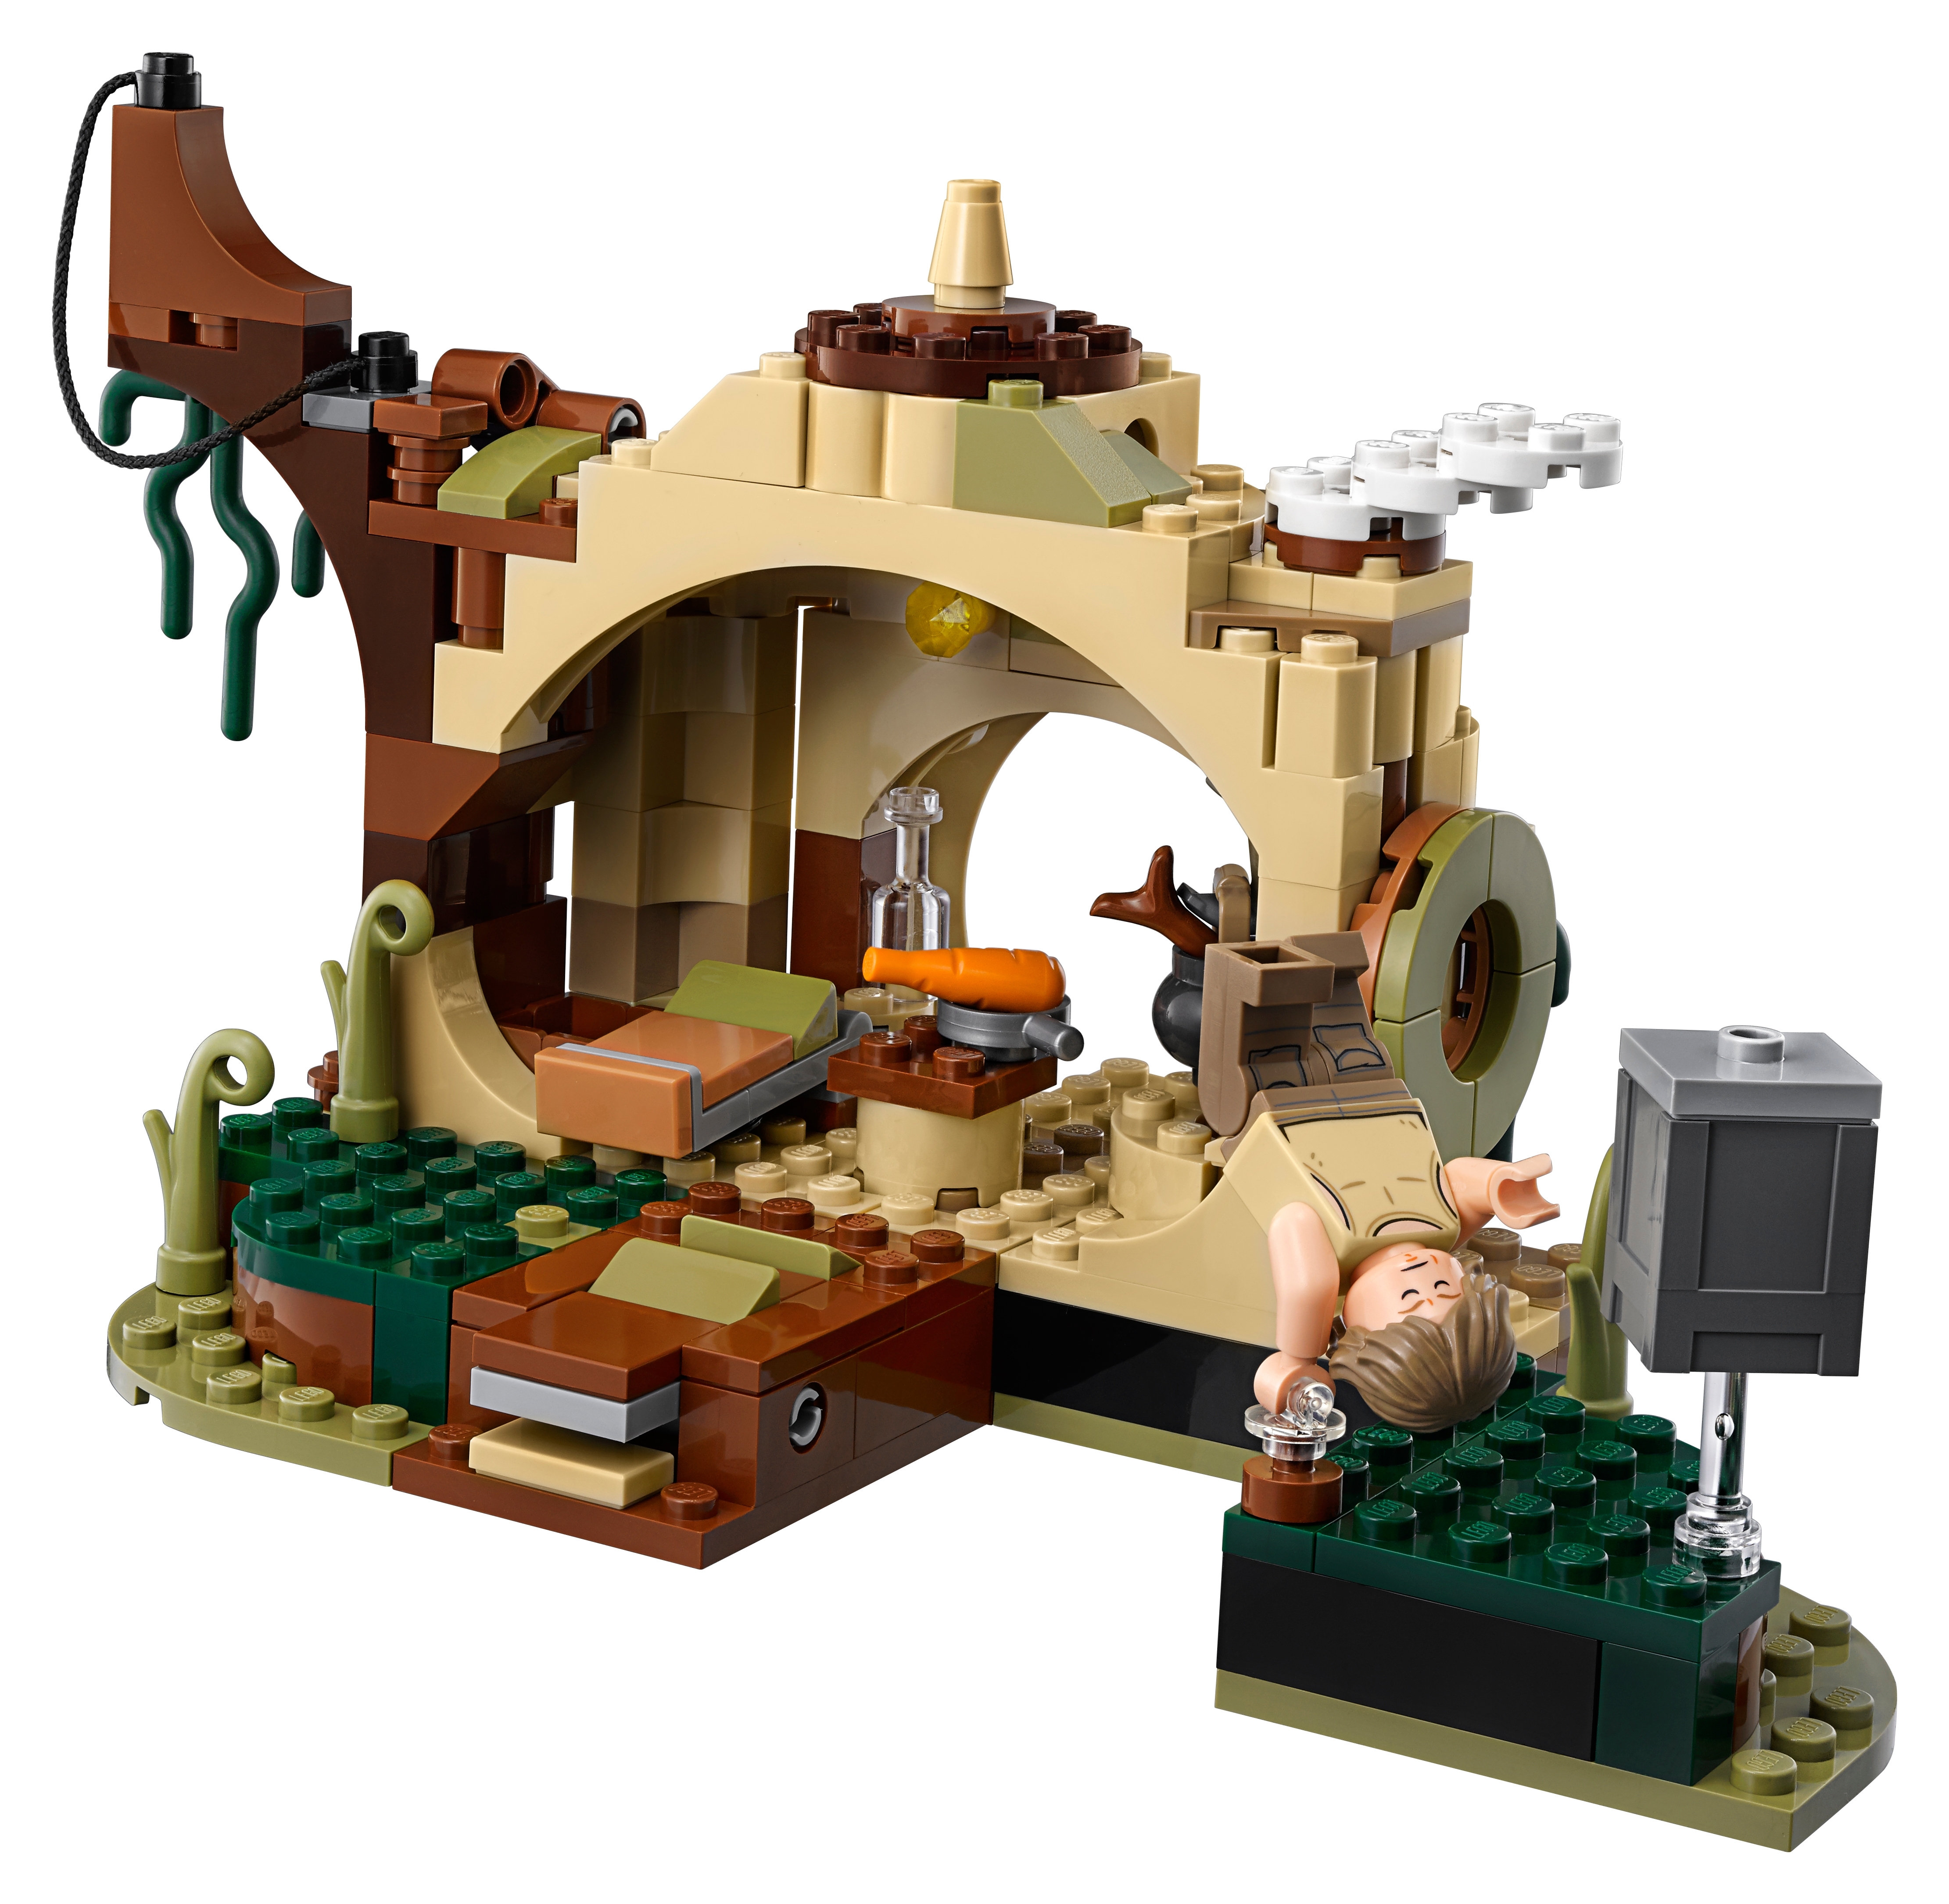 Mængde penge Rejse Generator Yoda's Hut 75208 | Star Wars™ | Buy online at the Official LEGO® Shop US